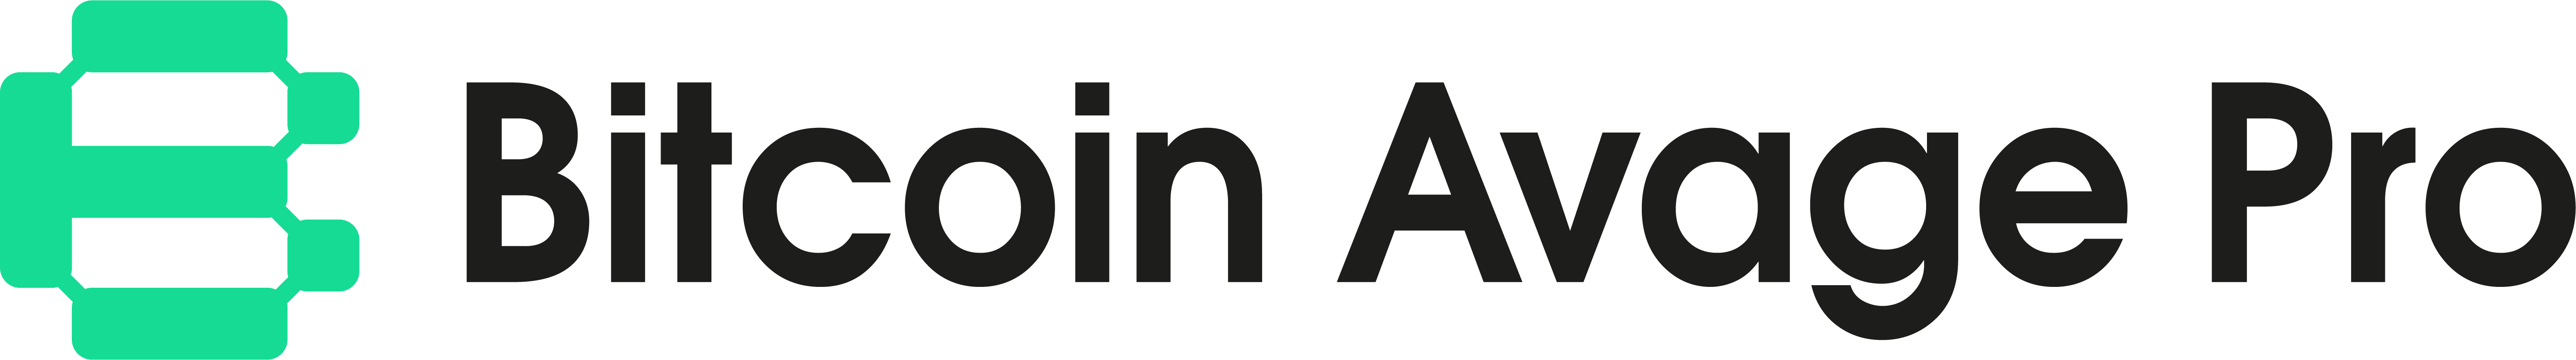 Bitcoin Avage Pro -logo